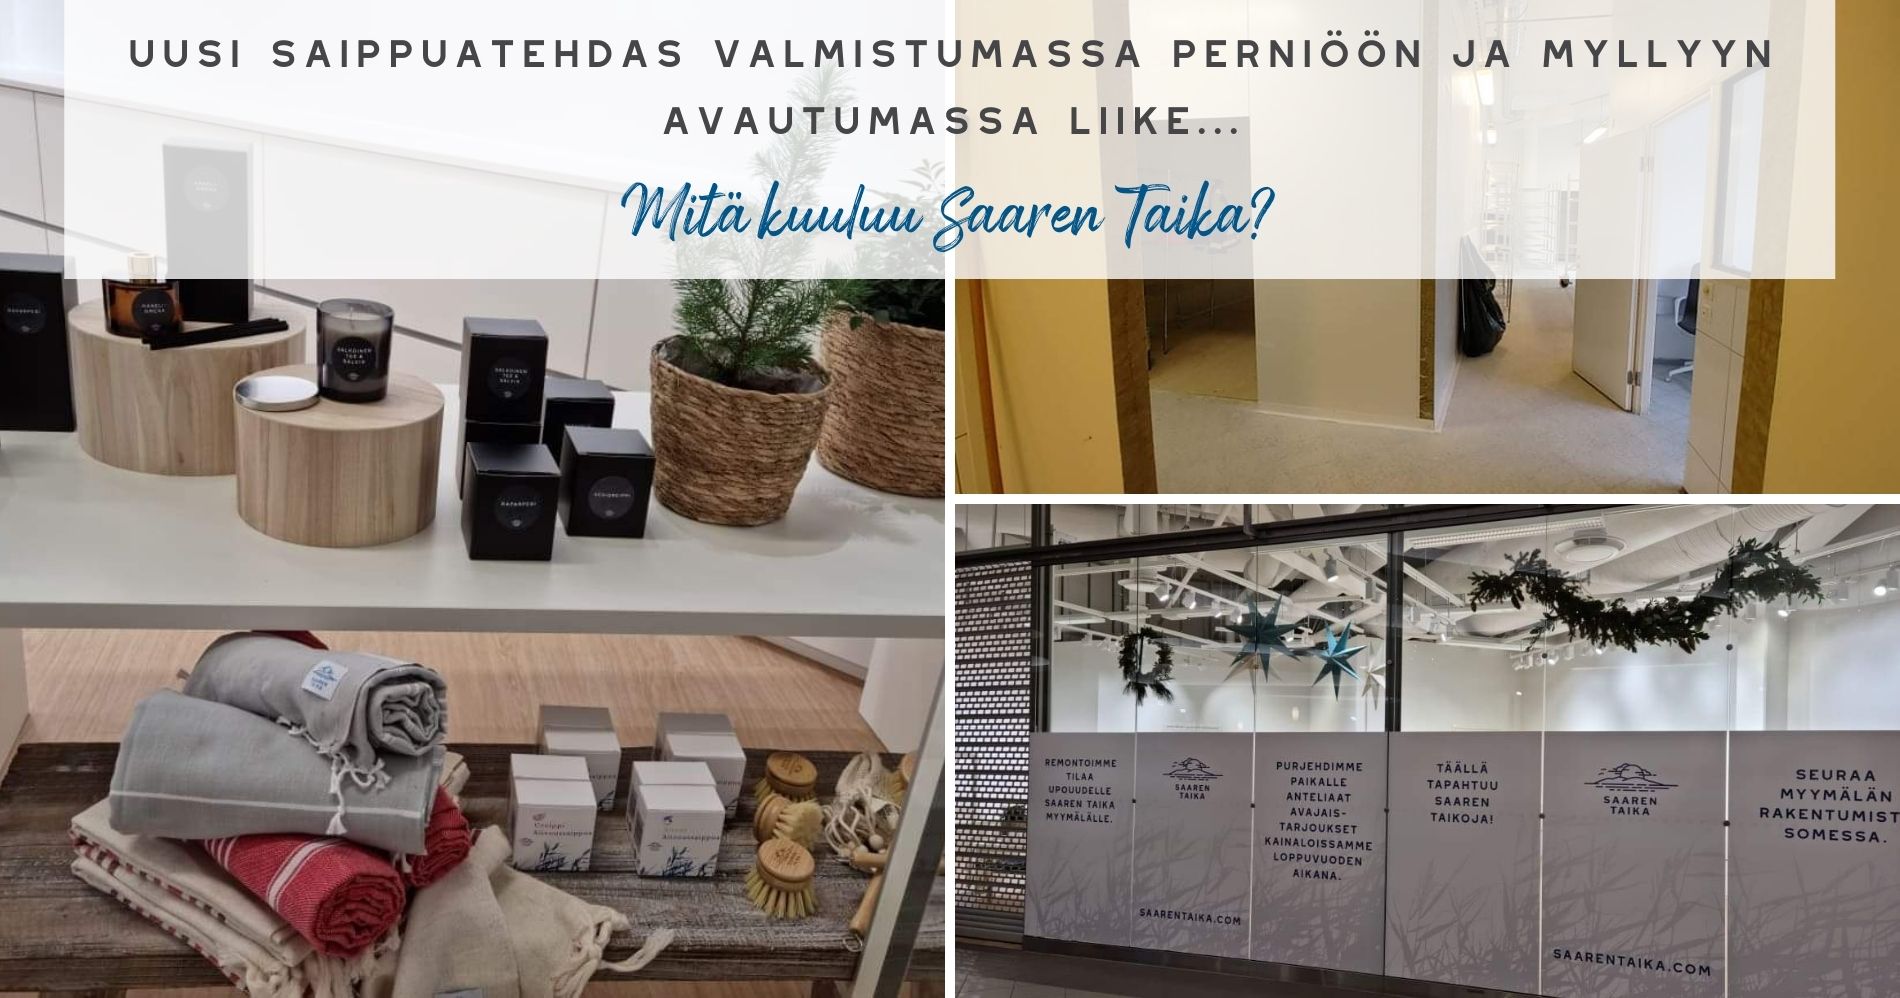 Uusi saippuatehdas valmistumassa Perniöön ja Myllyyn avautumassa liike - Mitä kuuluu Saaren Taika blogiartikkeli pohja